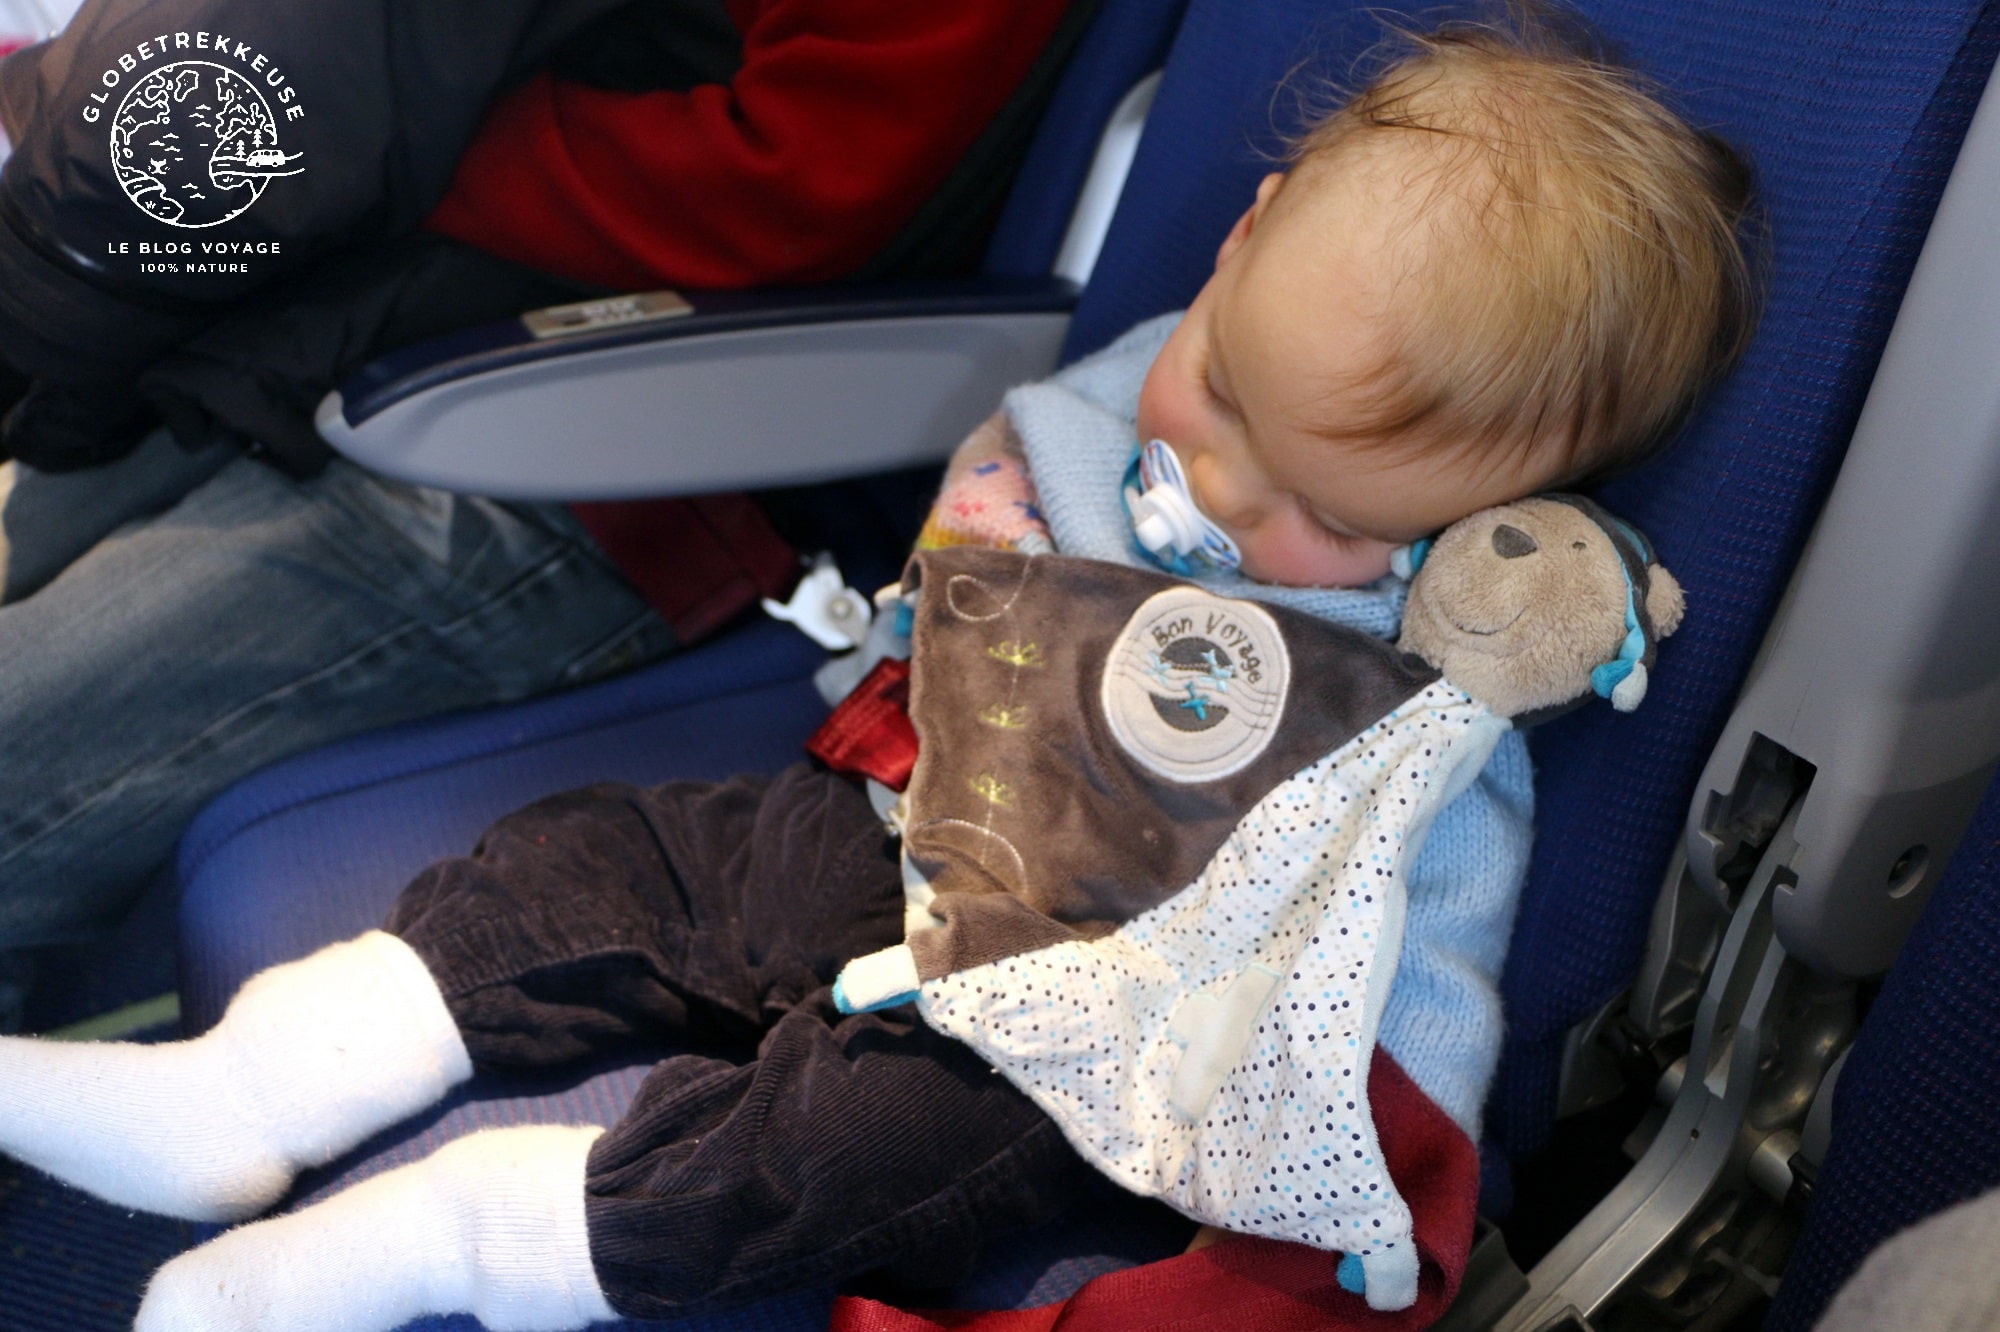 Astuces pour prendre l'avion avec un bébé - 0 à 6 mois